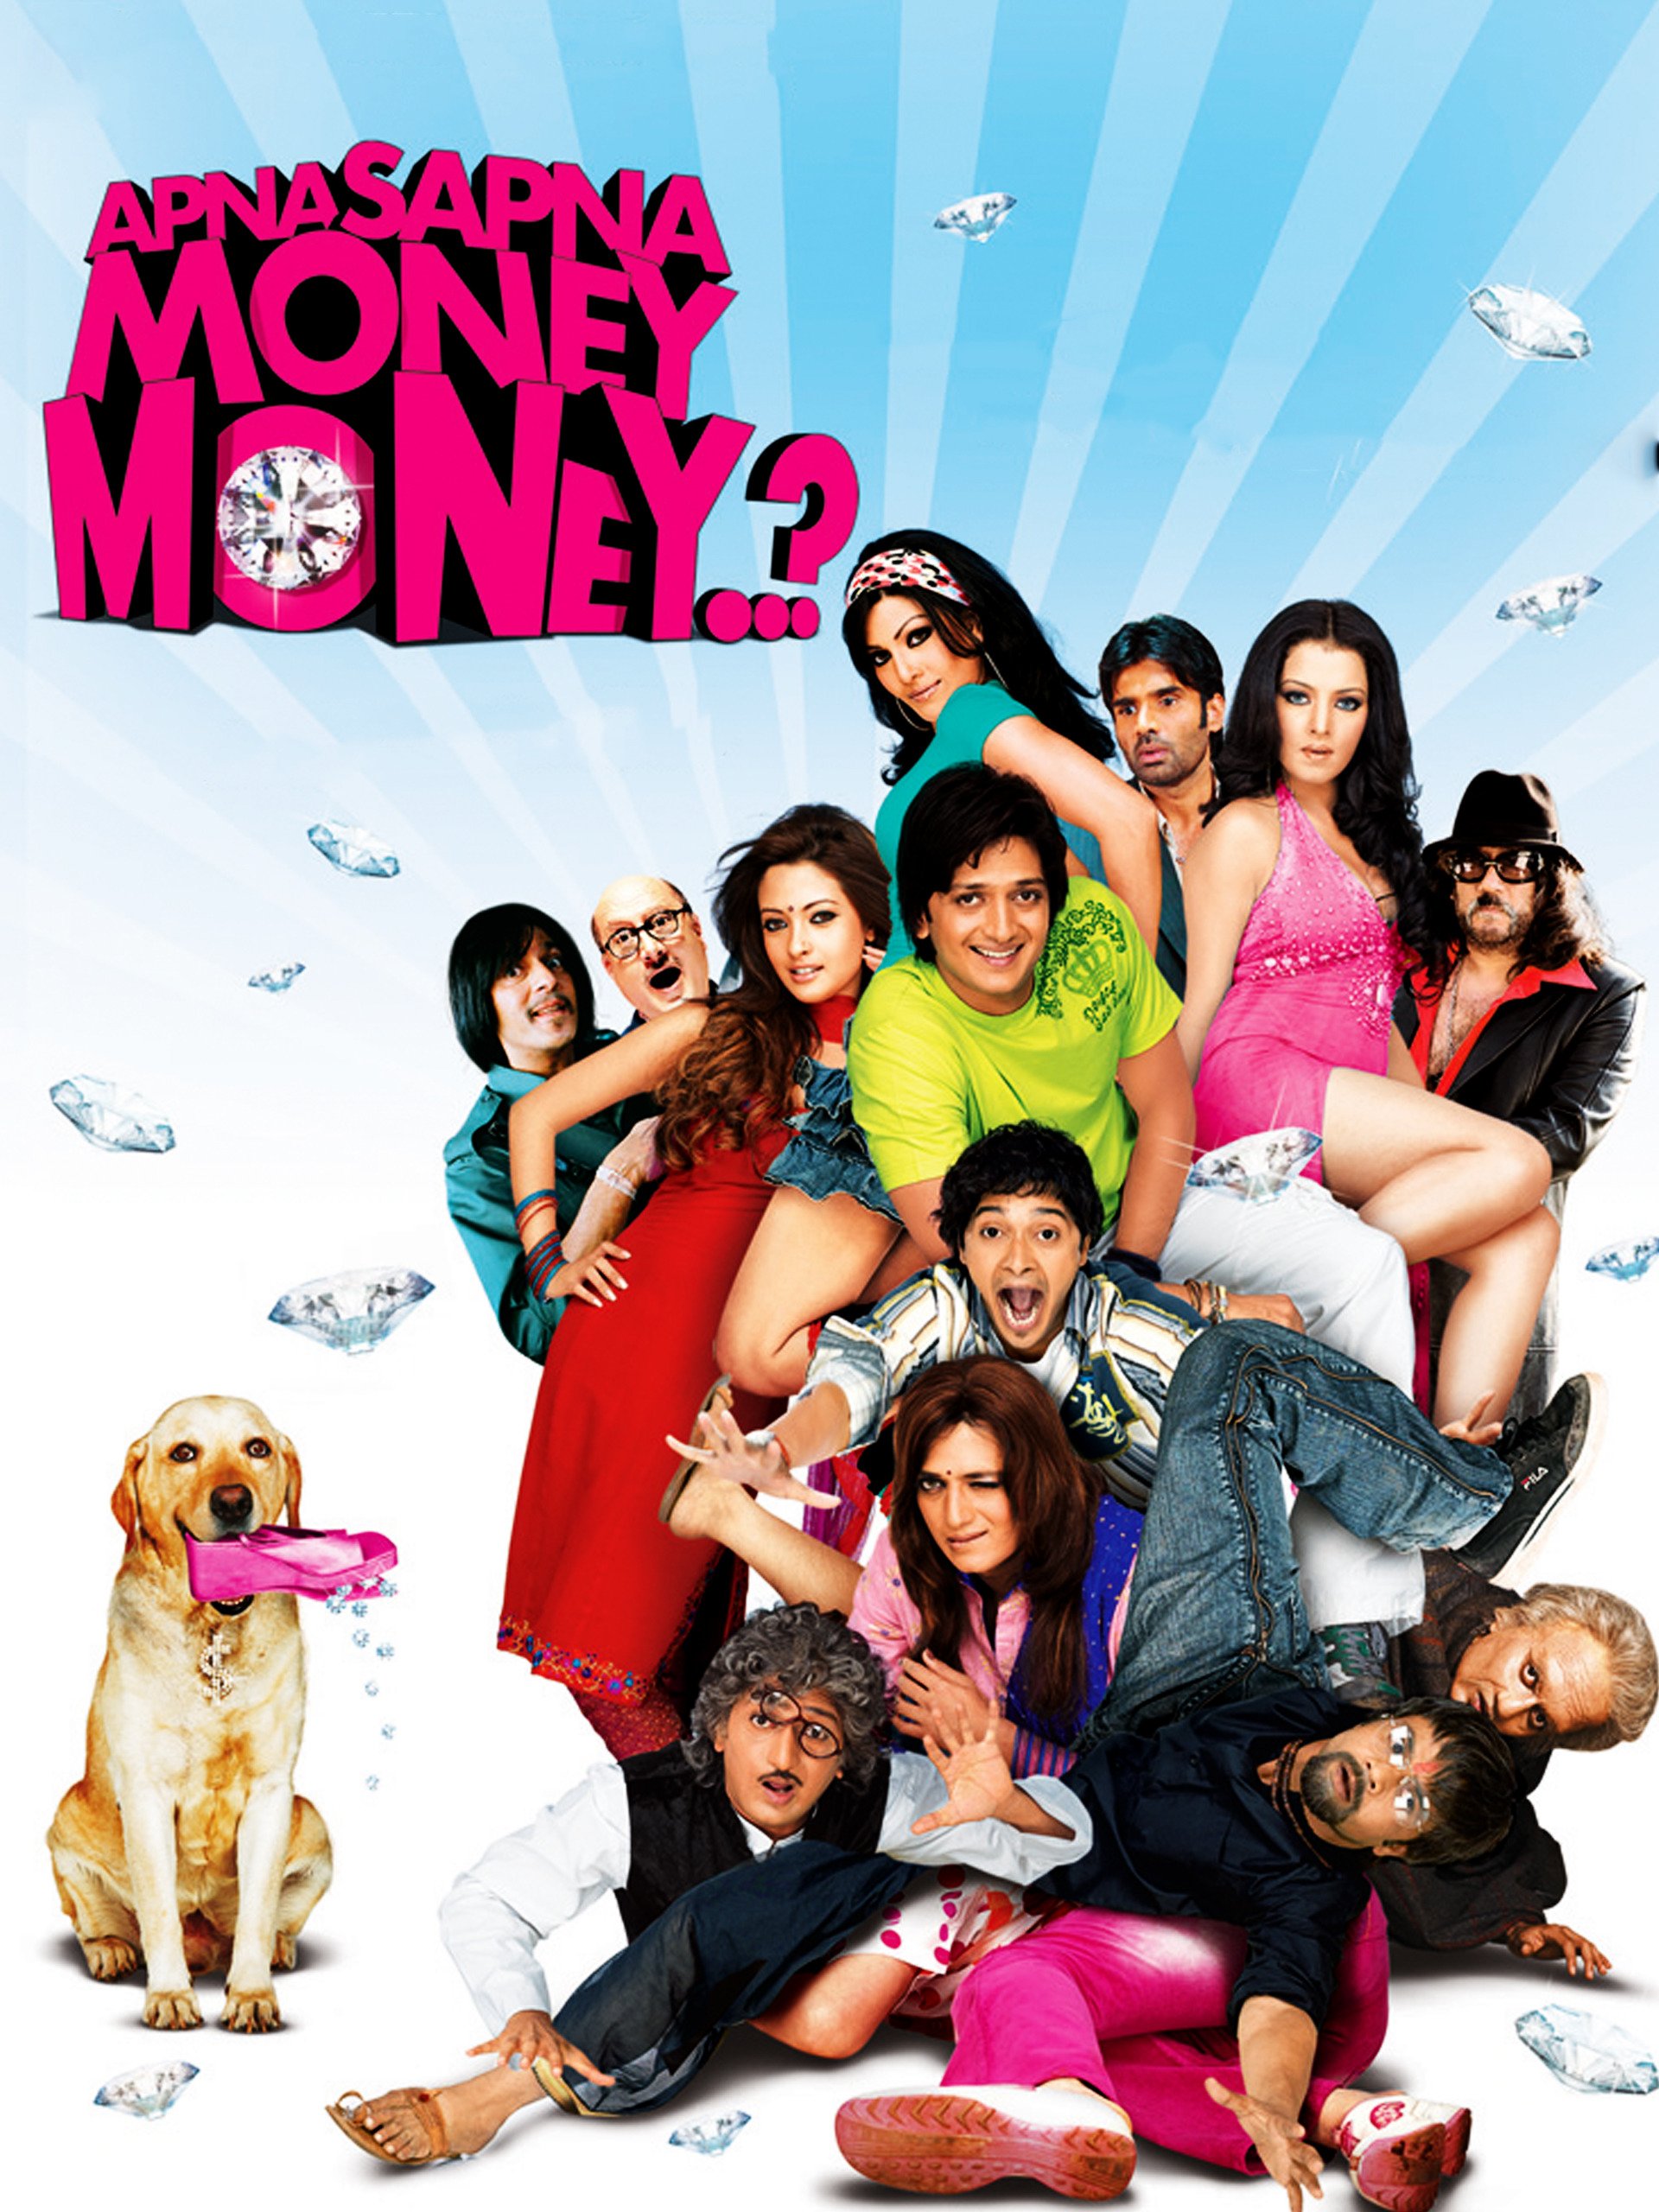 Apna Sapna Money Money 2006 3244 Poster.jpg